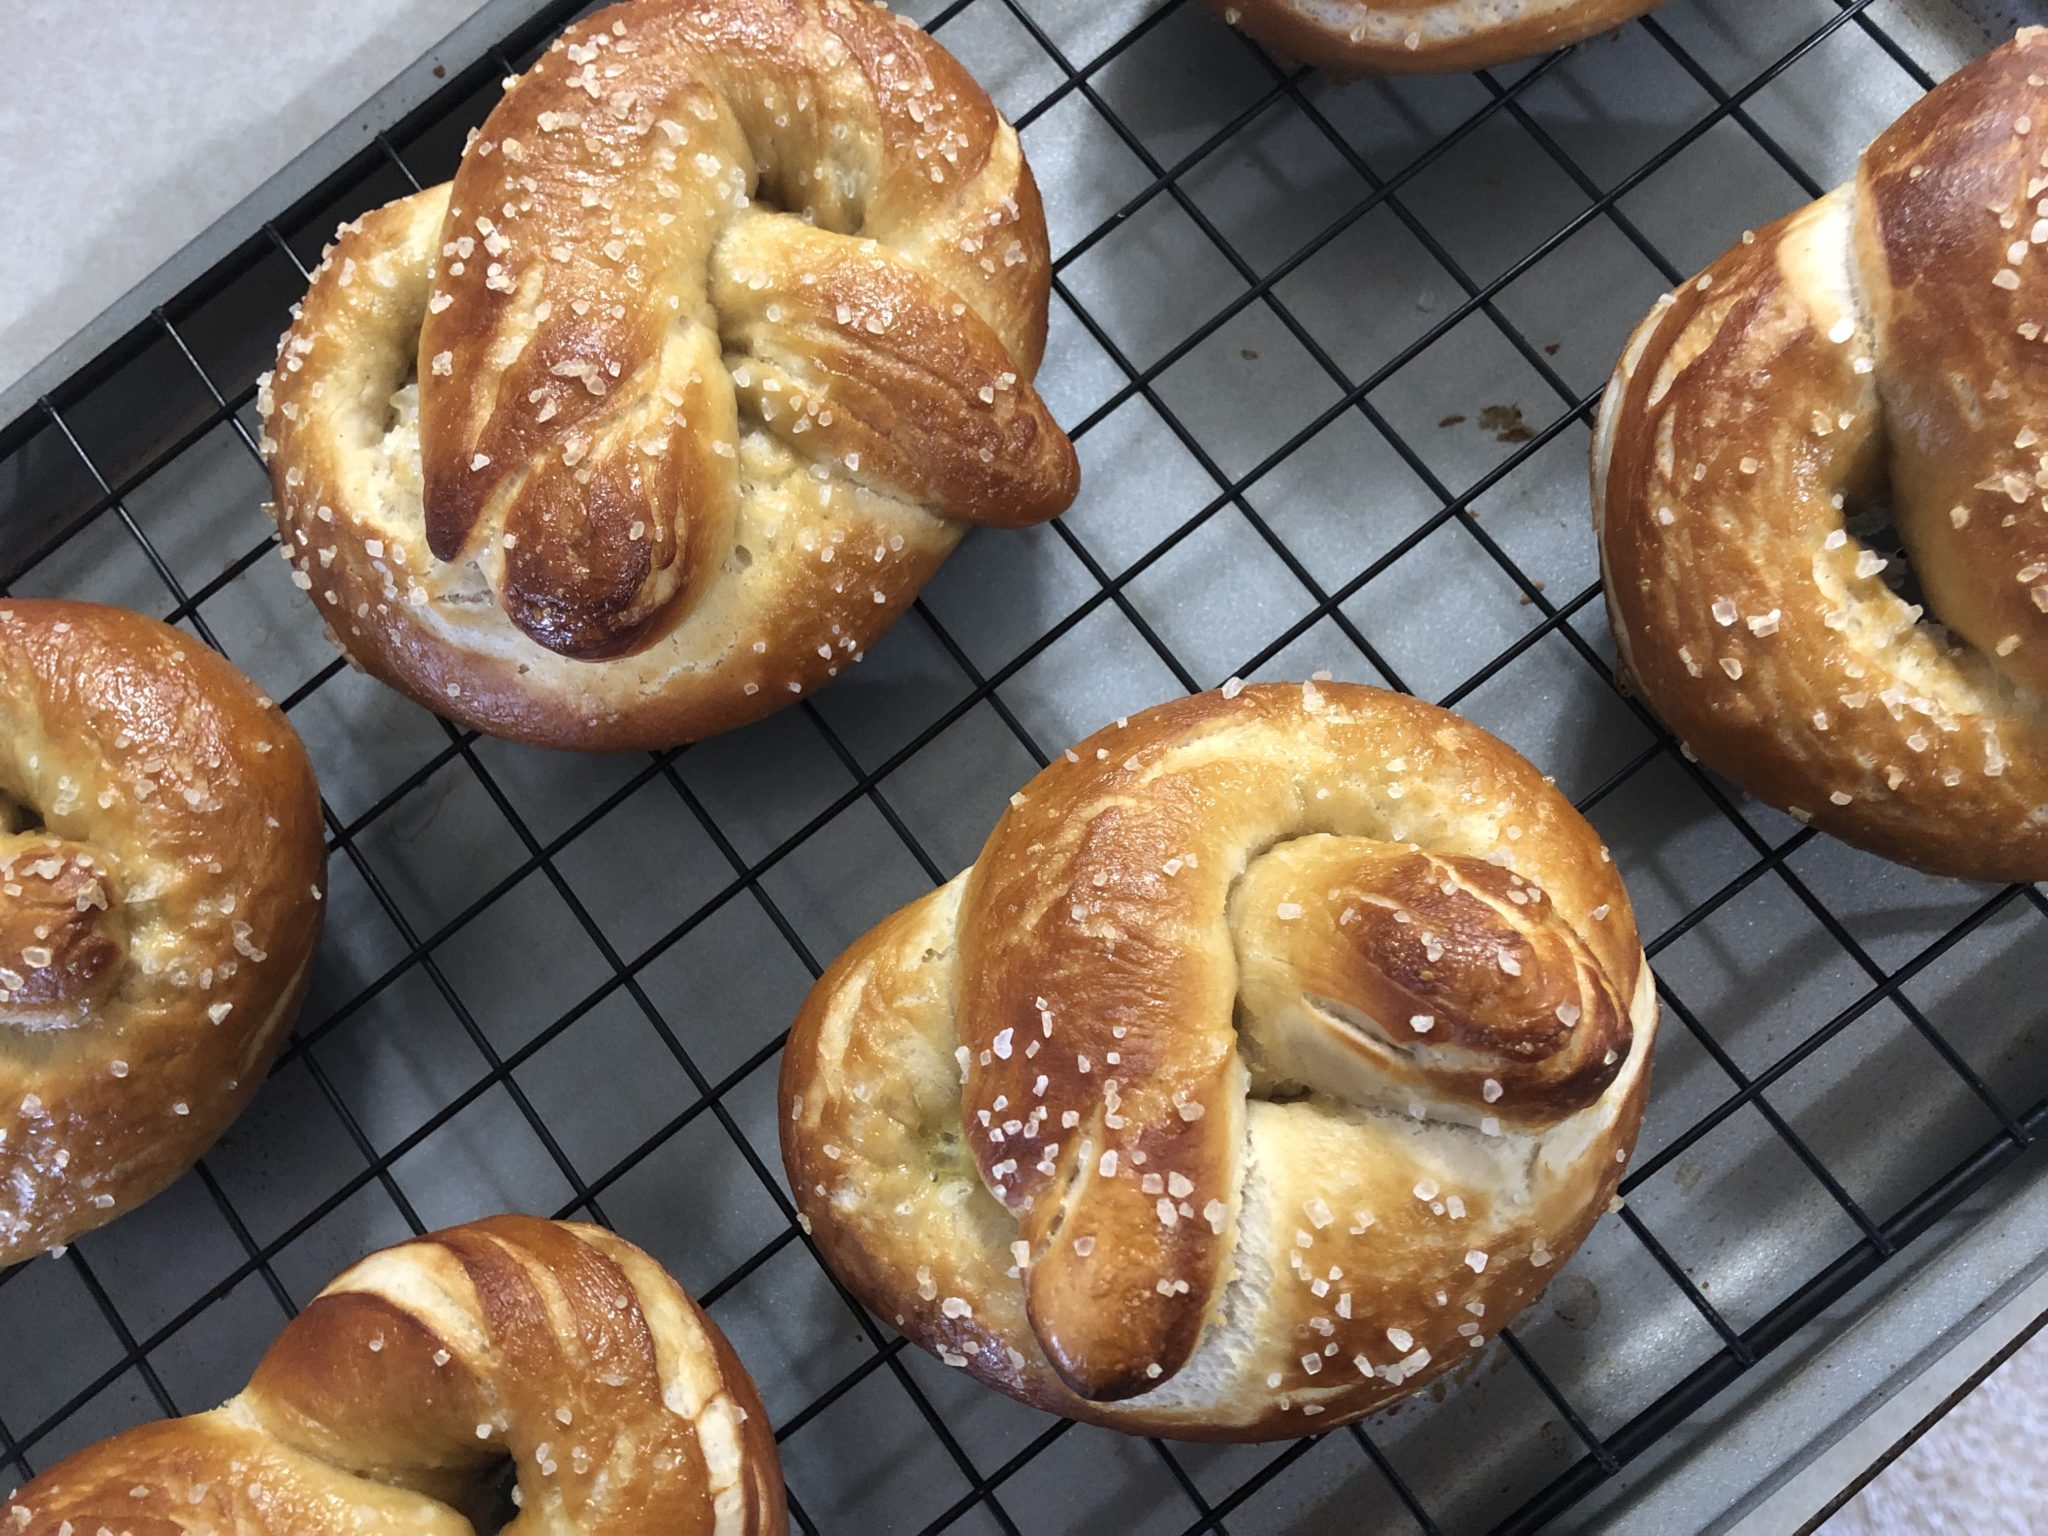 Haciendo Pretzels de Cuaresma: Lo que los pretzels nos recuerdan durante la Cuaresma